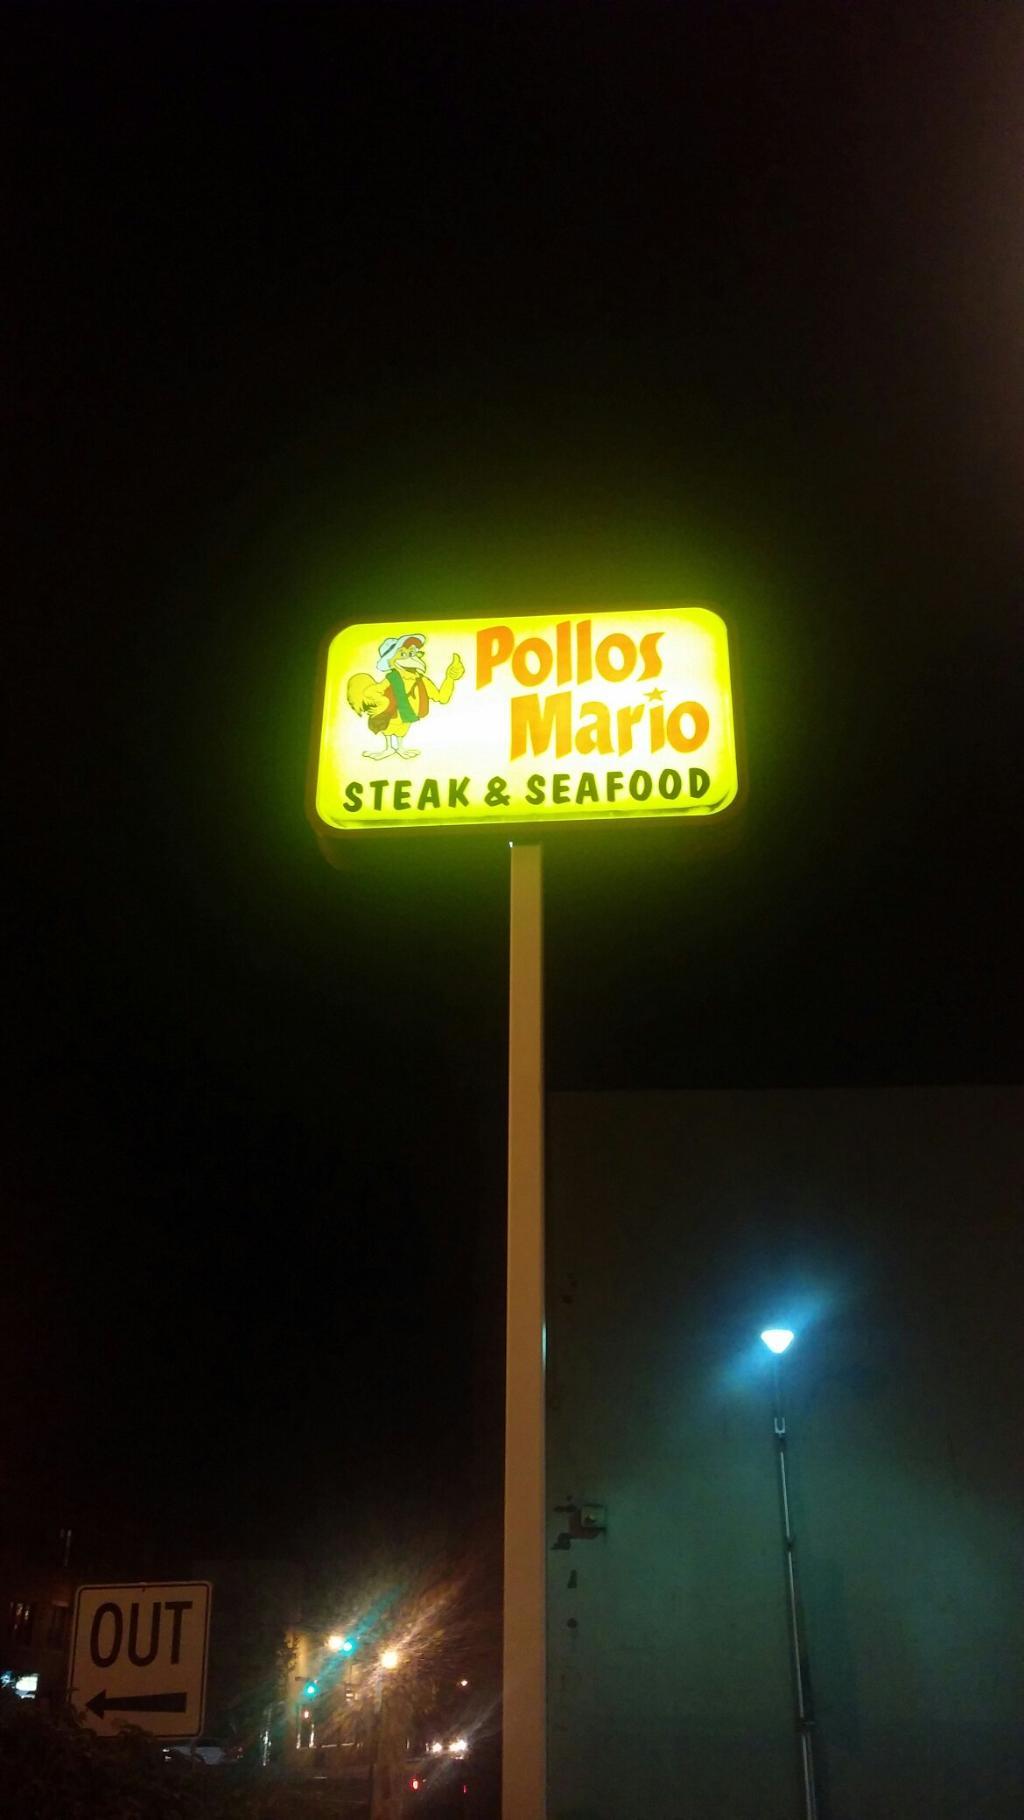 Pollos Mario Restaurant